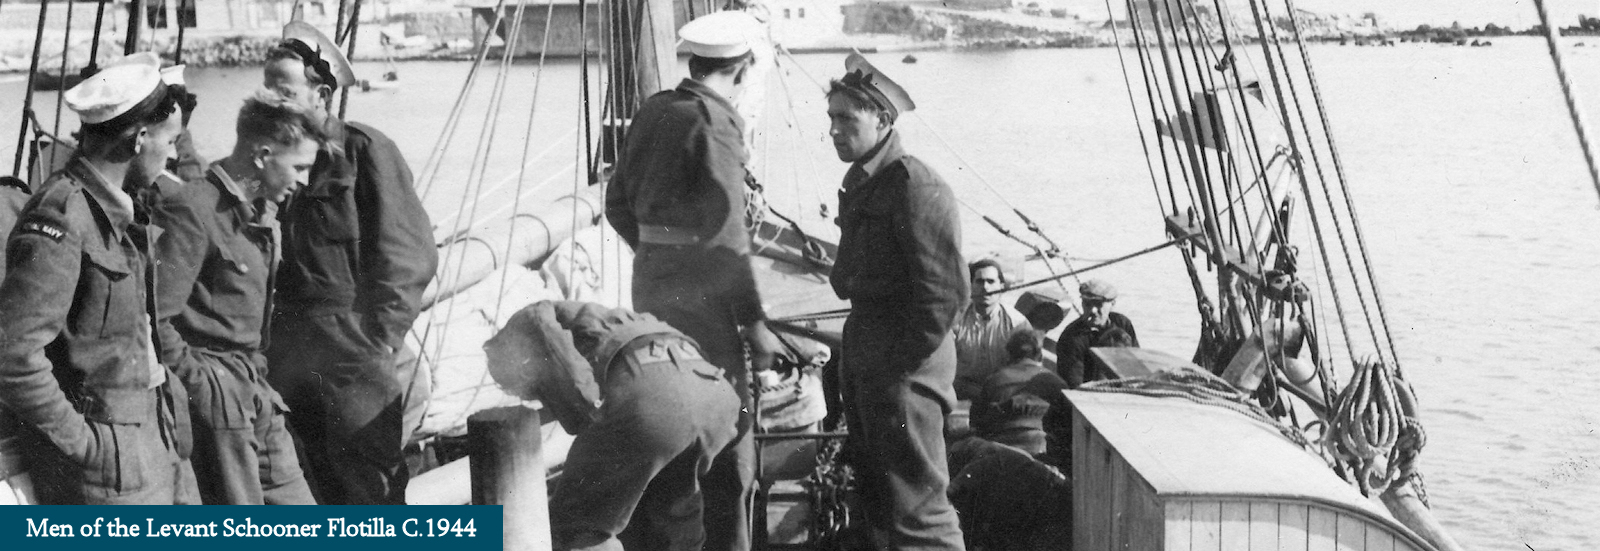 Nem of the Levant Schooner Flotilla Circa 1944